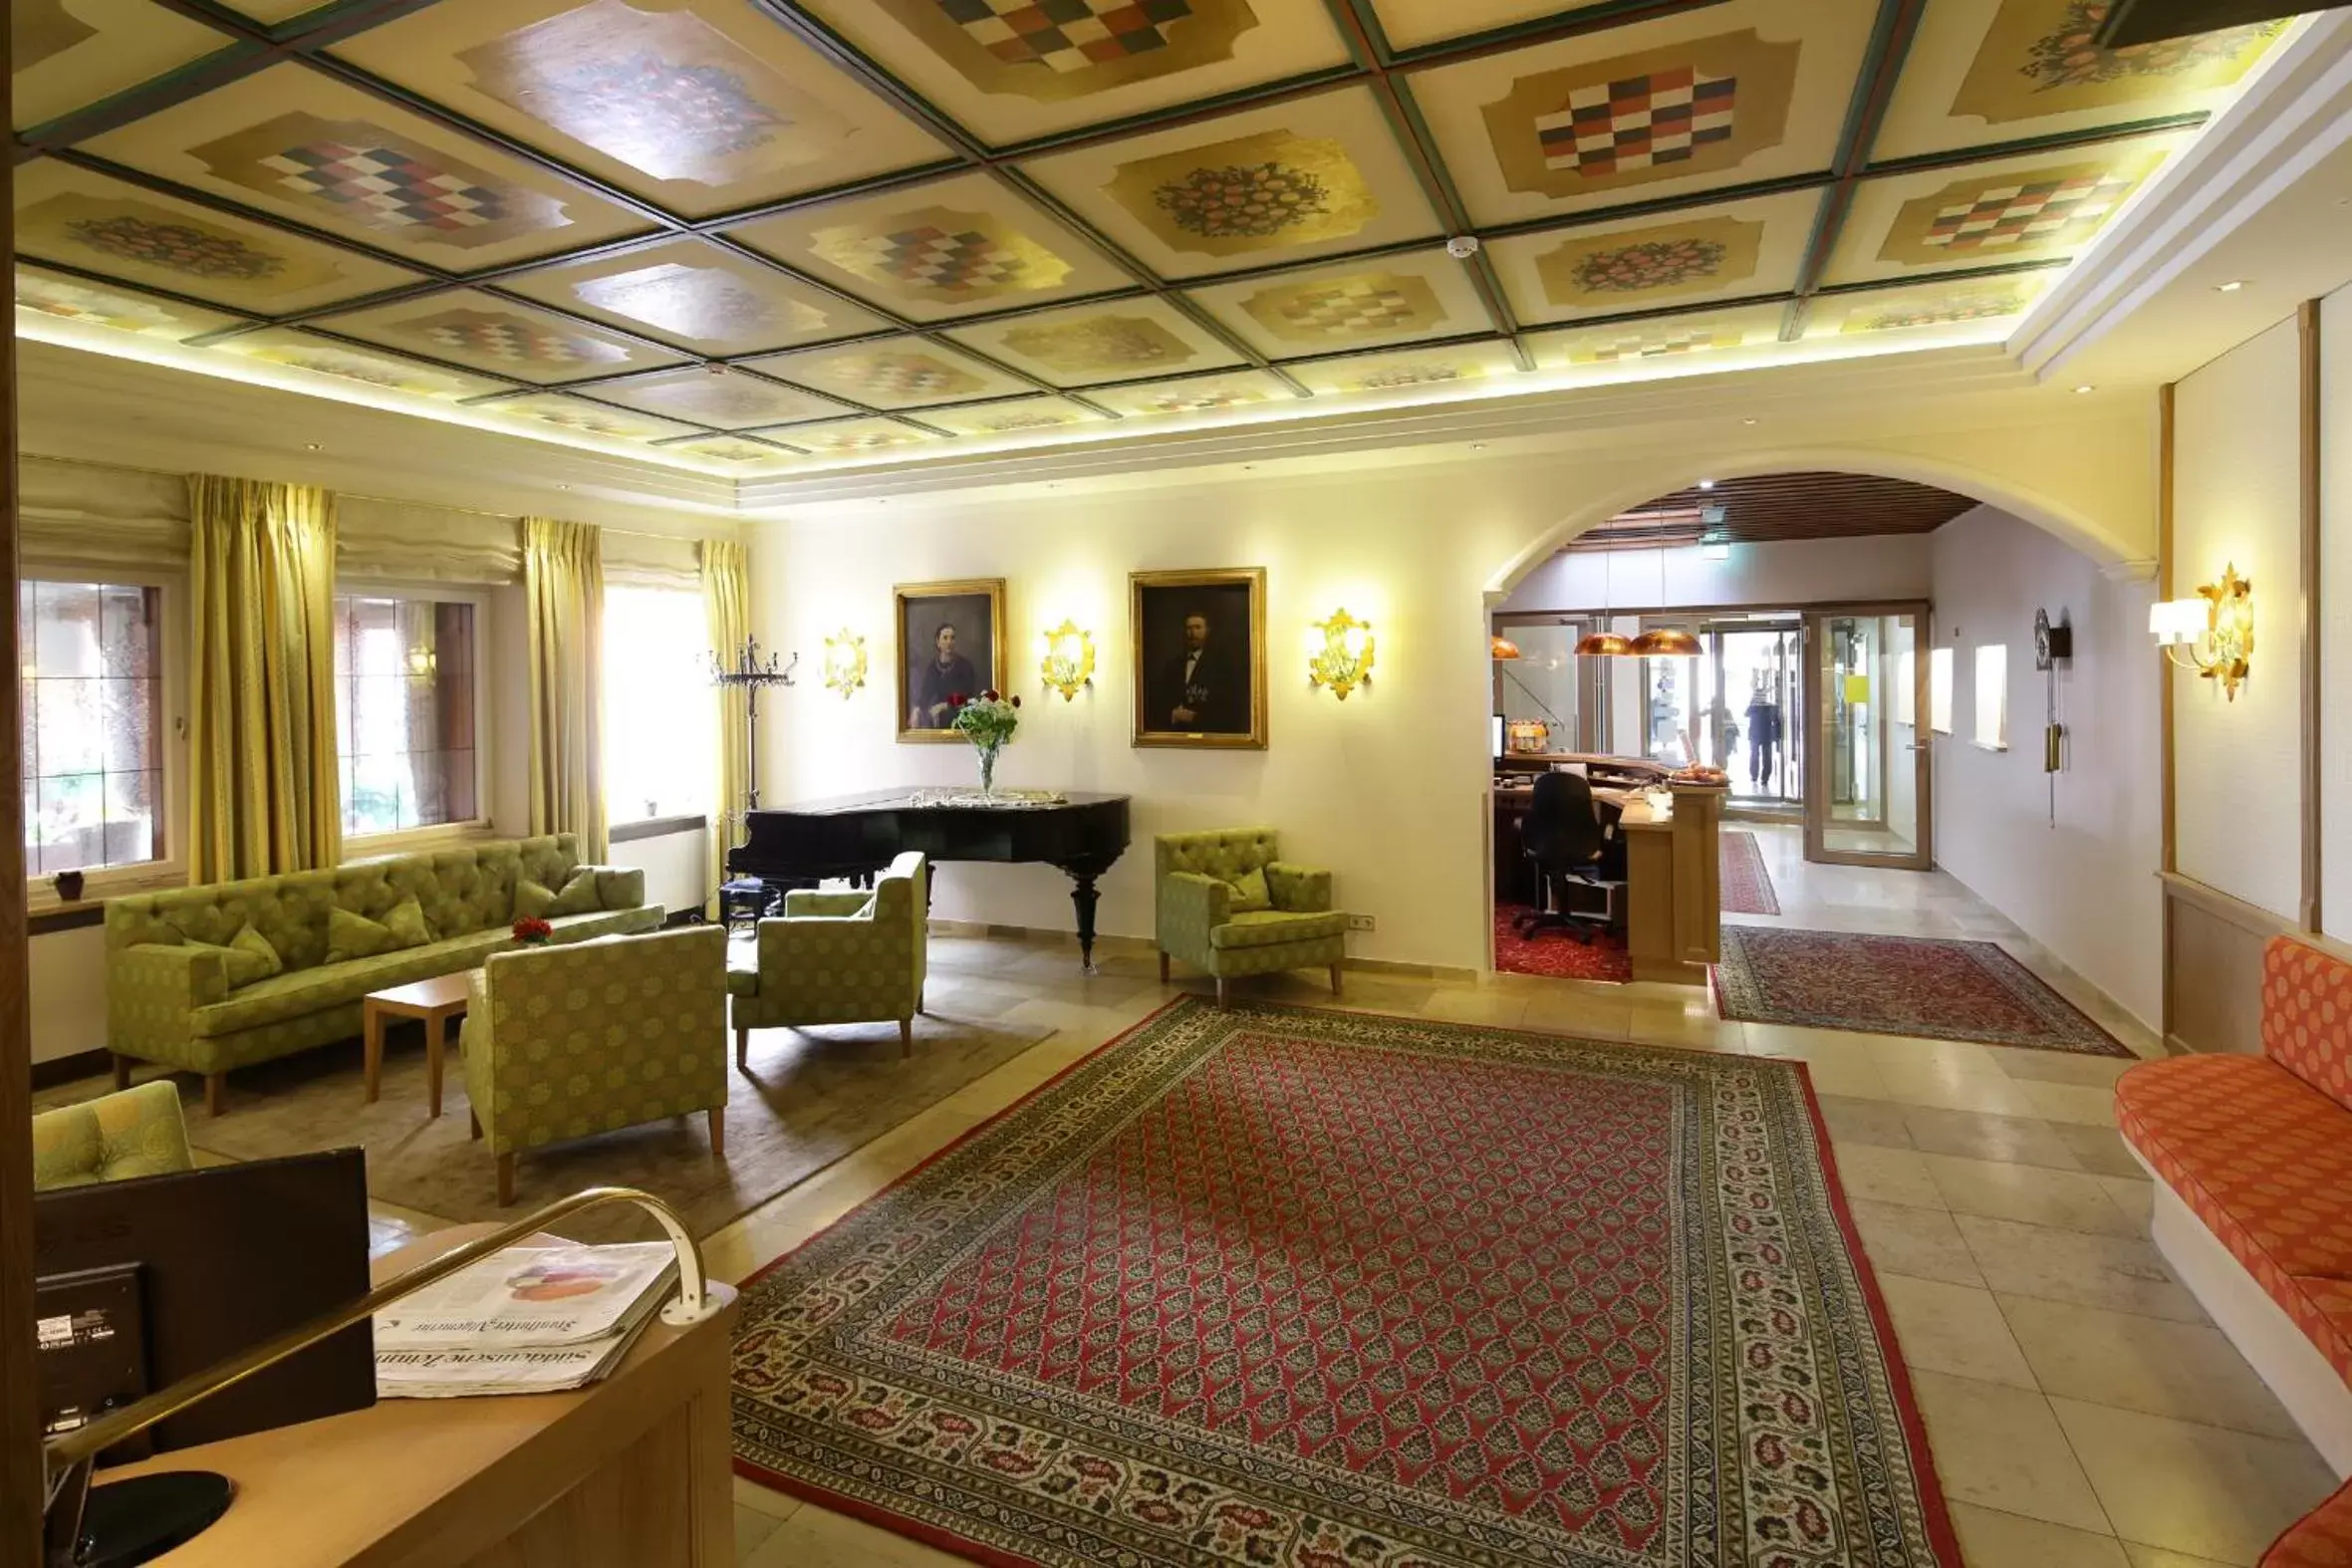 Lounge or bar, Lobby/Reception in Bayerischer Hof